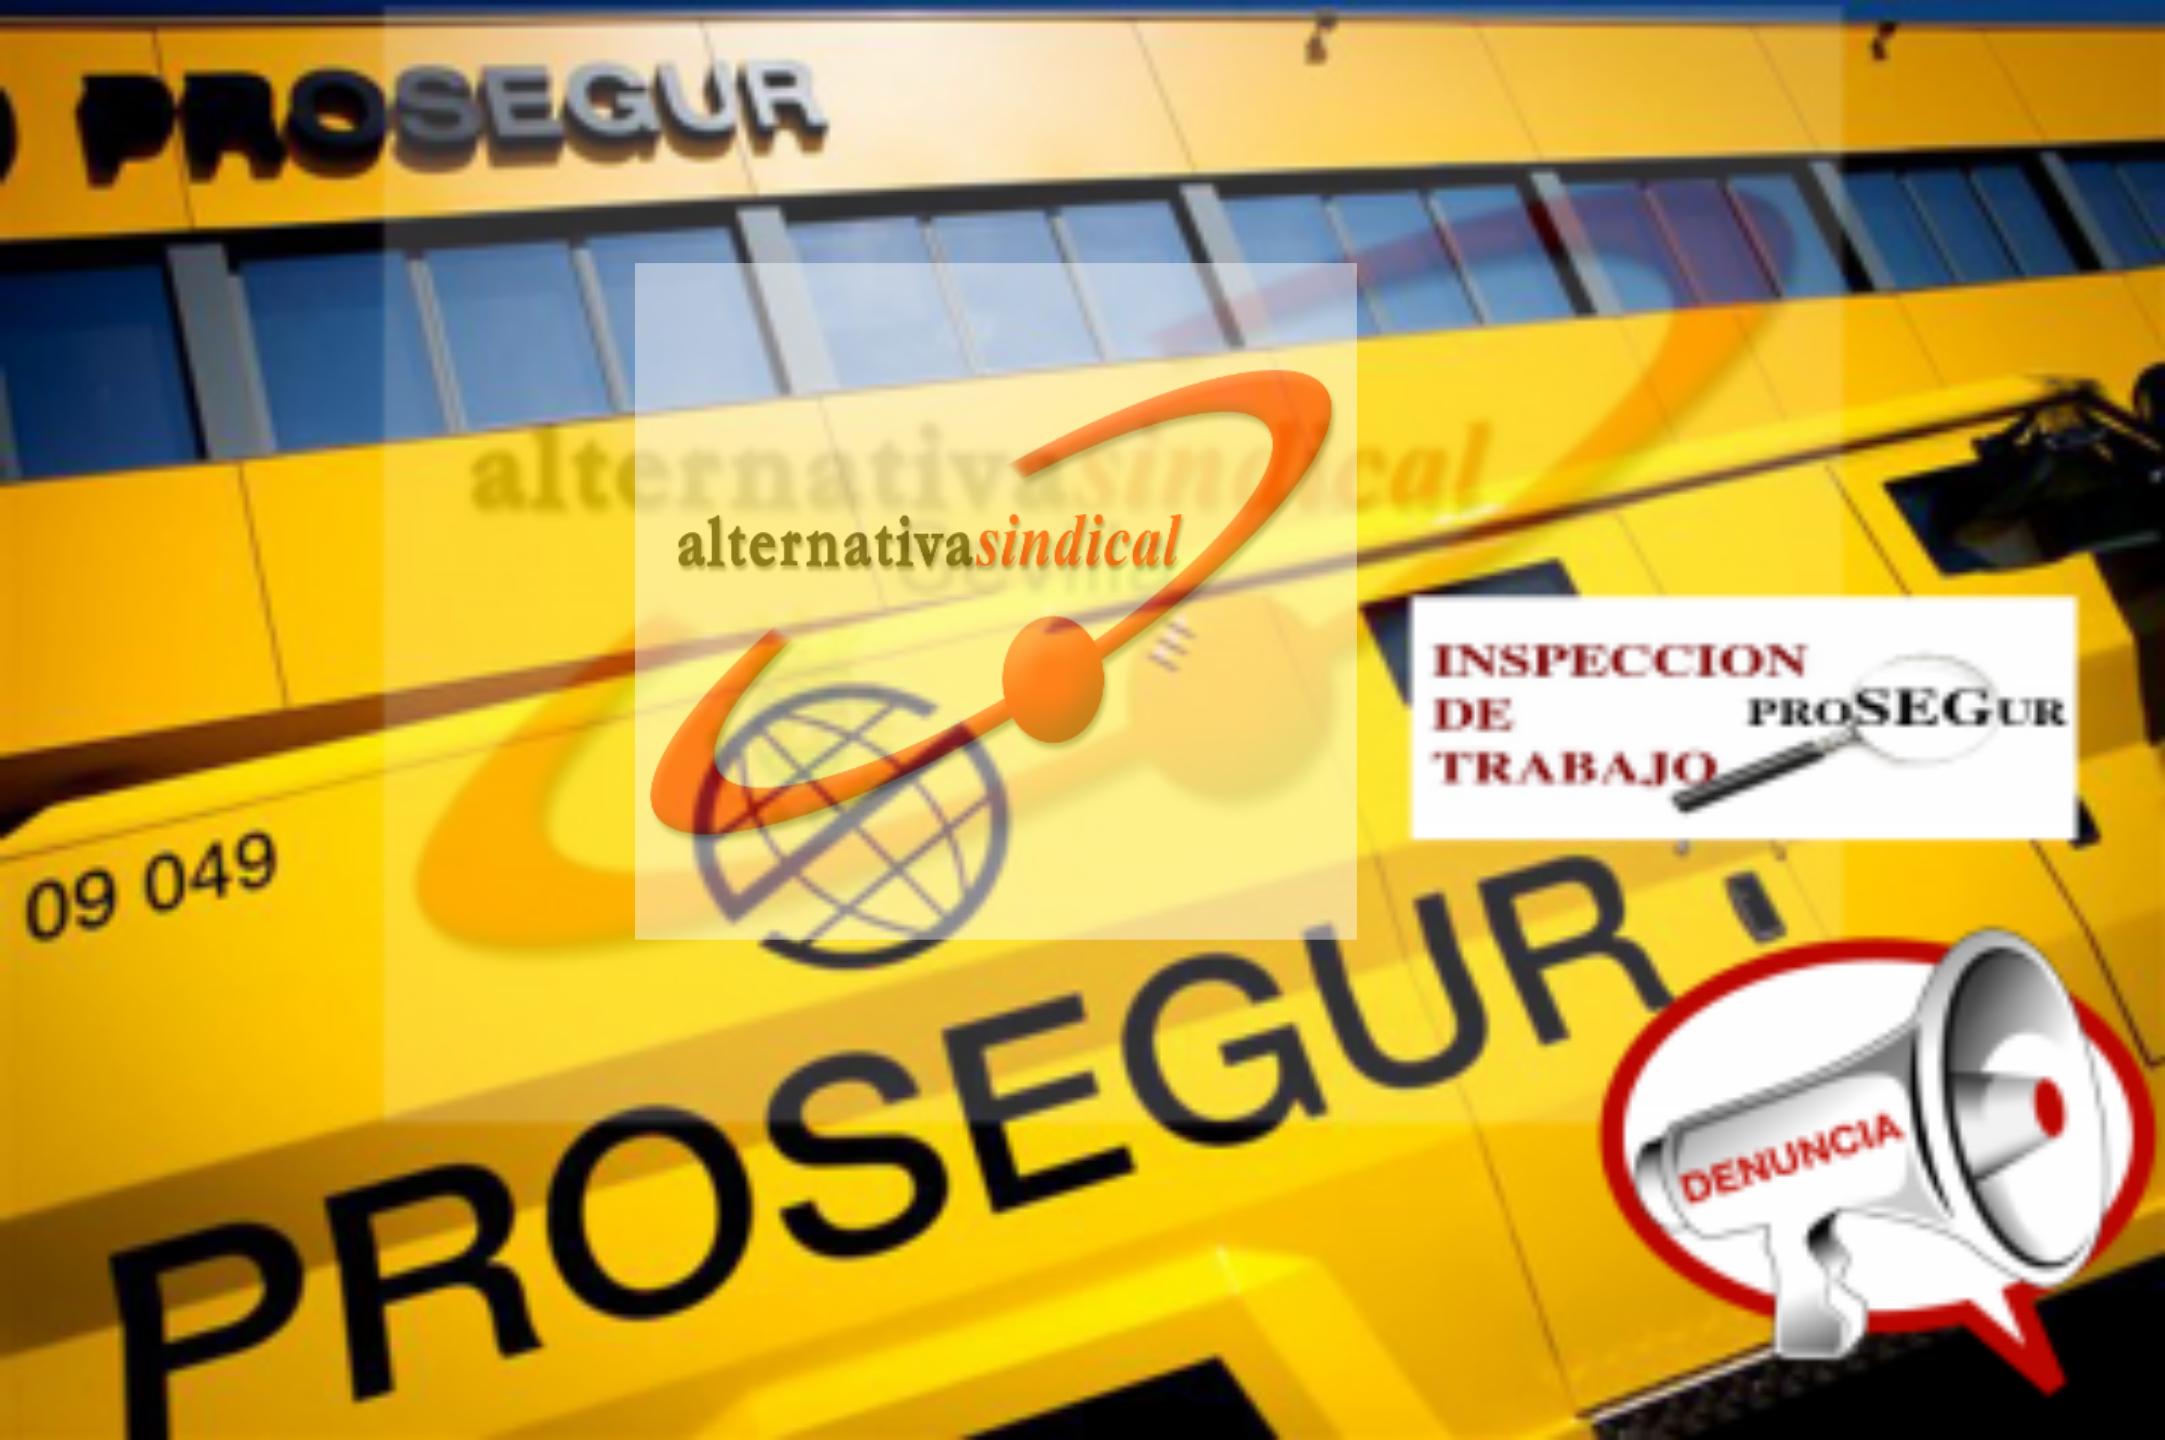 Denuncia presentada hoy en Inspección de Trabajo de Cádiz, contra Prosegur Cash, por no limpiar ni desinfectar los vehículos.